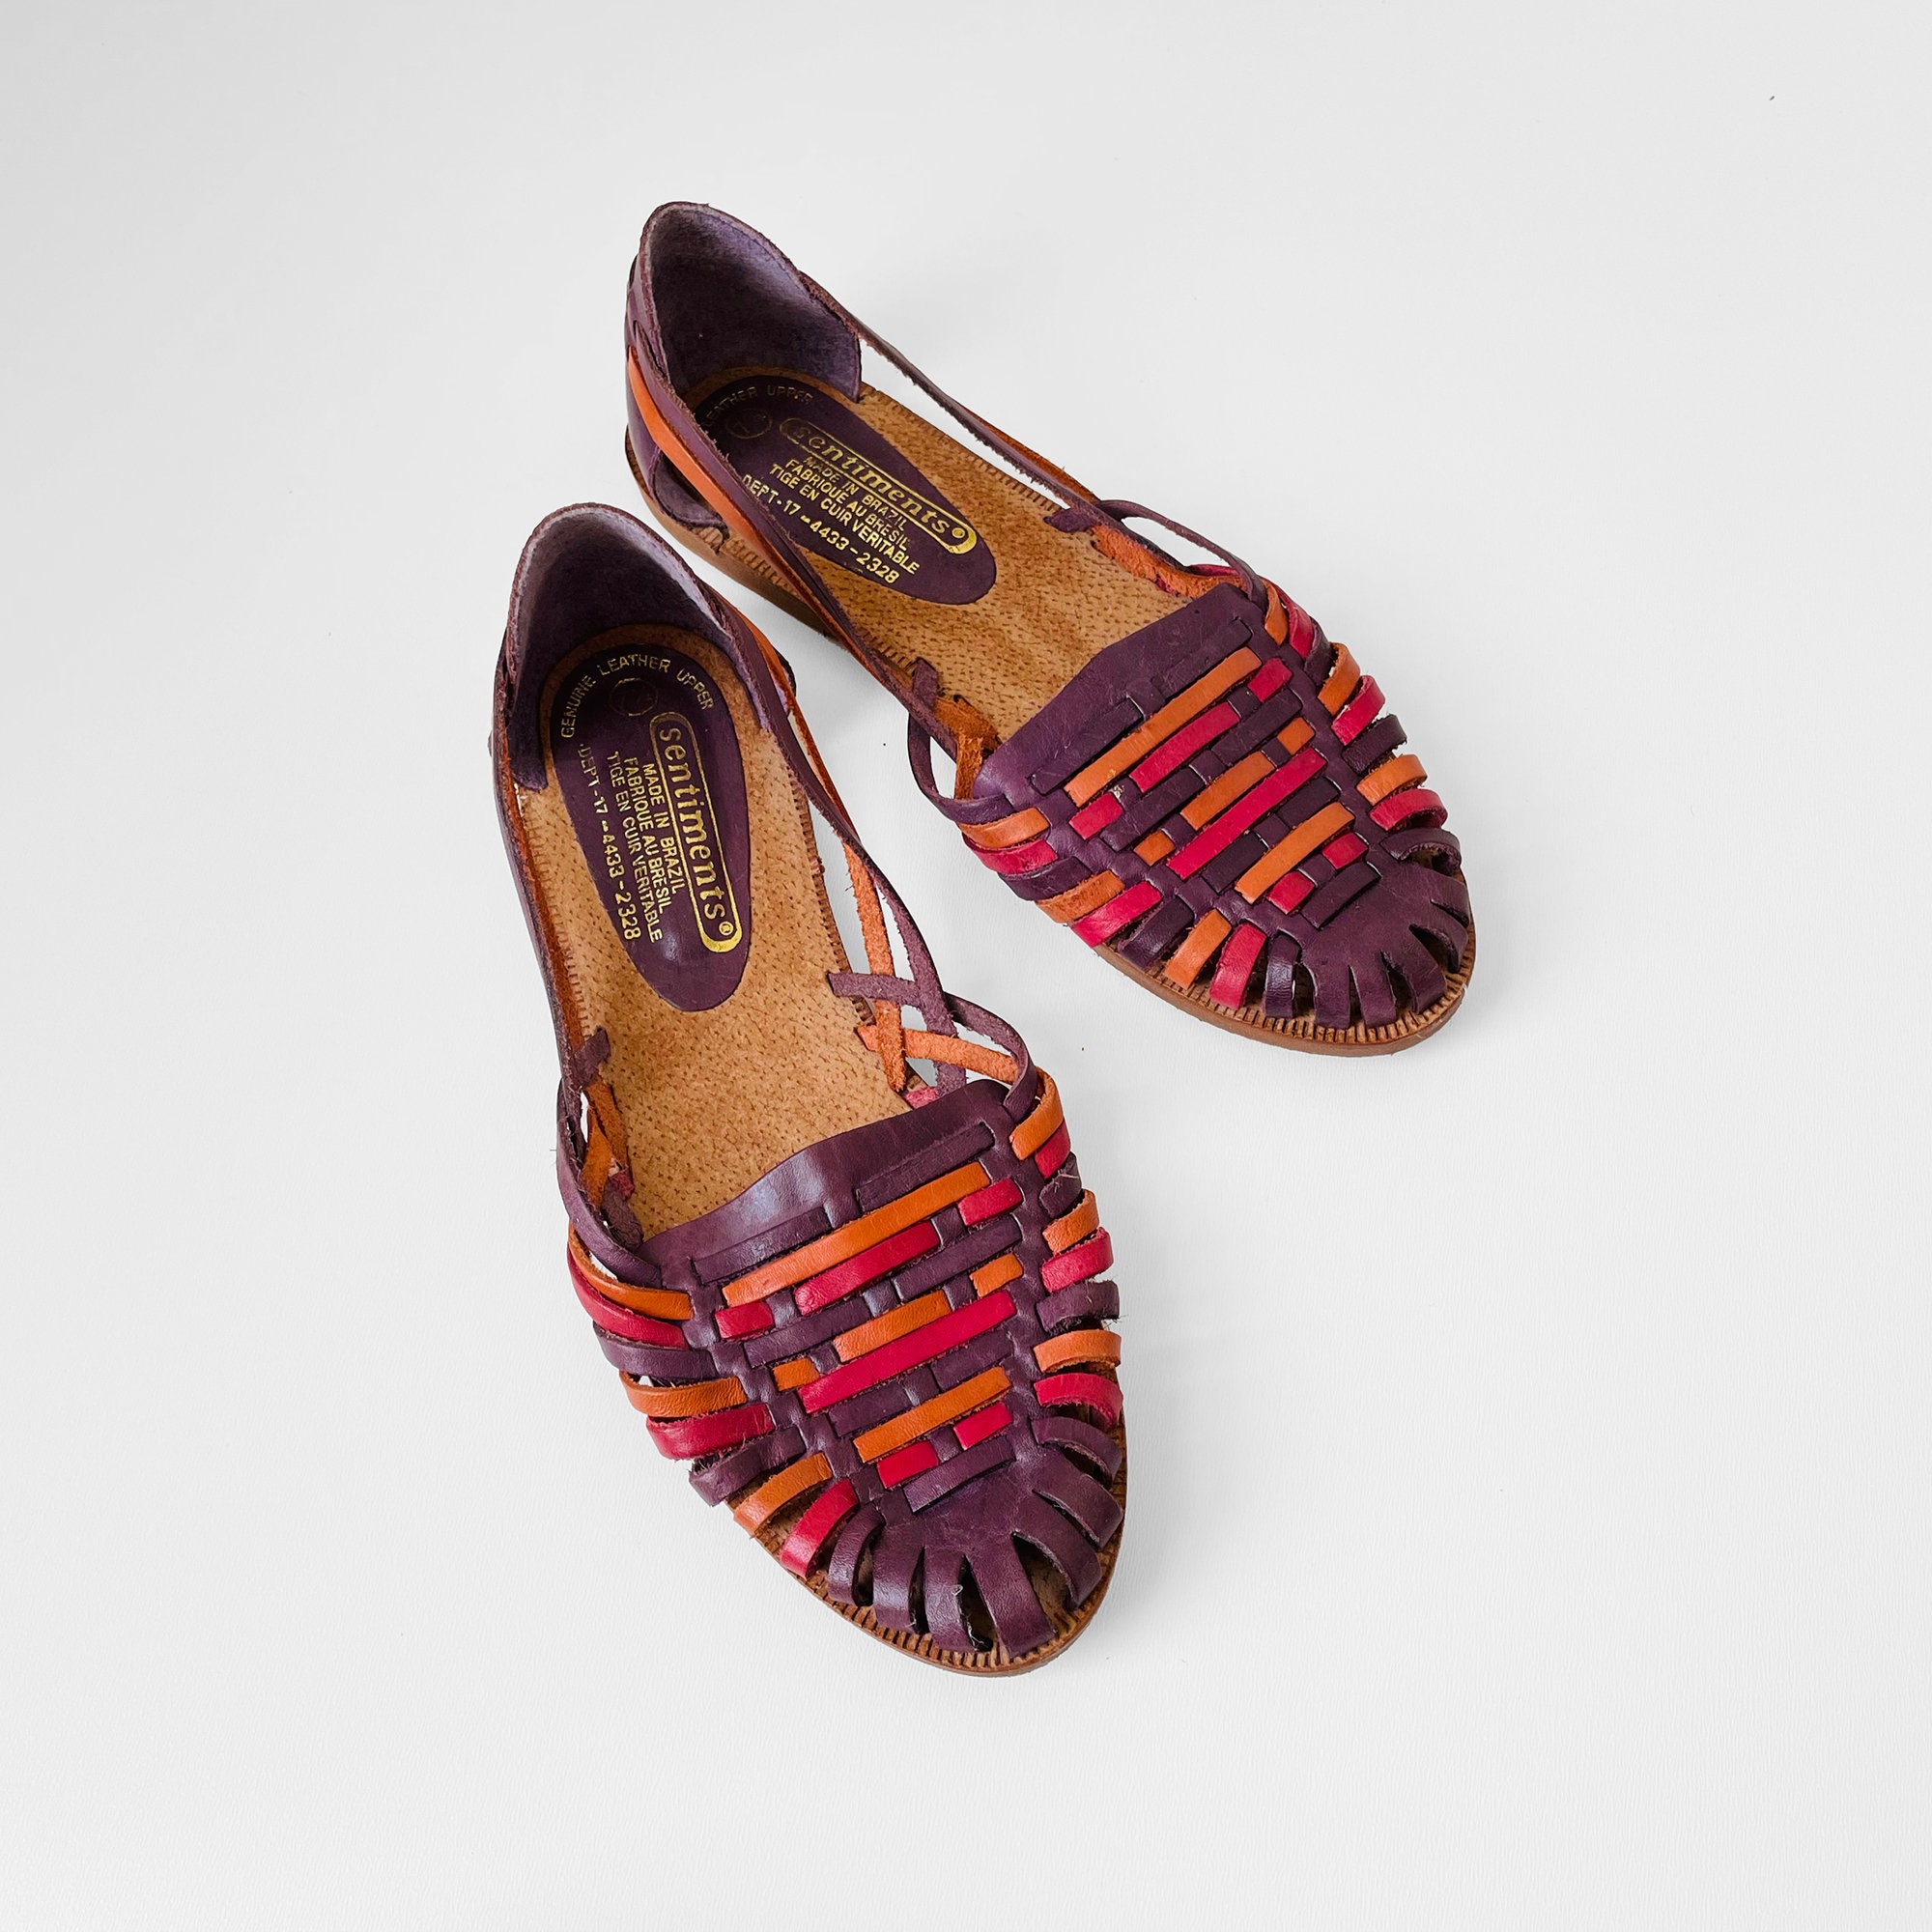 Zapatos Zapatos para mujer Sandalias Alpargatas y cuñas Cuñas Vintage Azul Oscuro 80s con Correas Rosa/Púrpura // Confort // Talla 41 // Made In Italy 